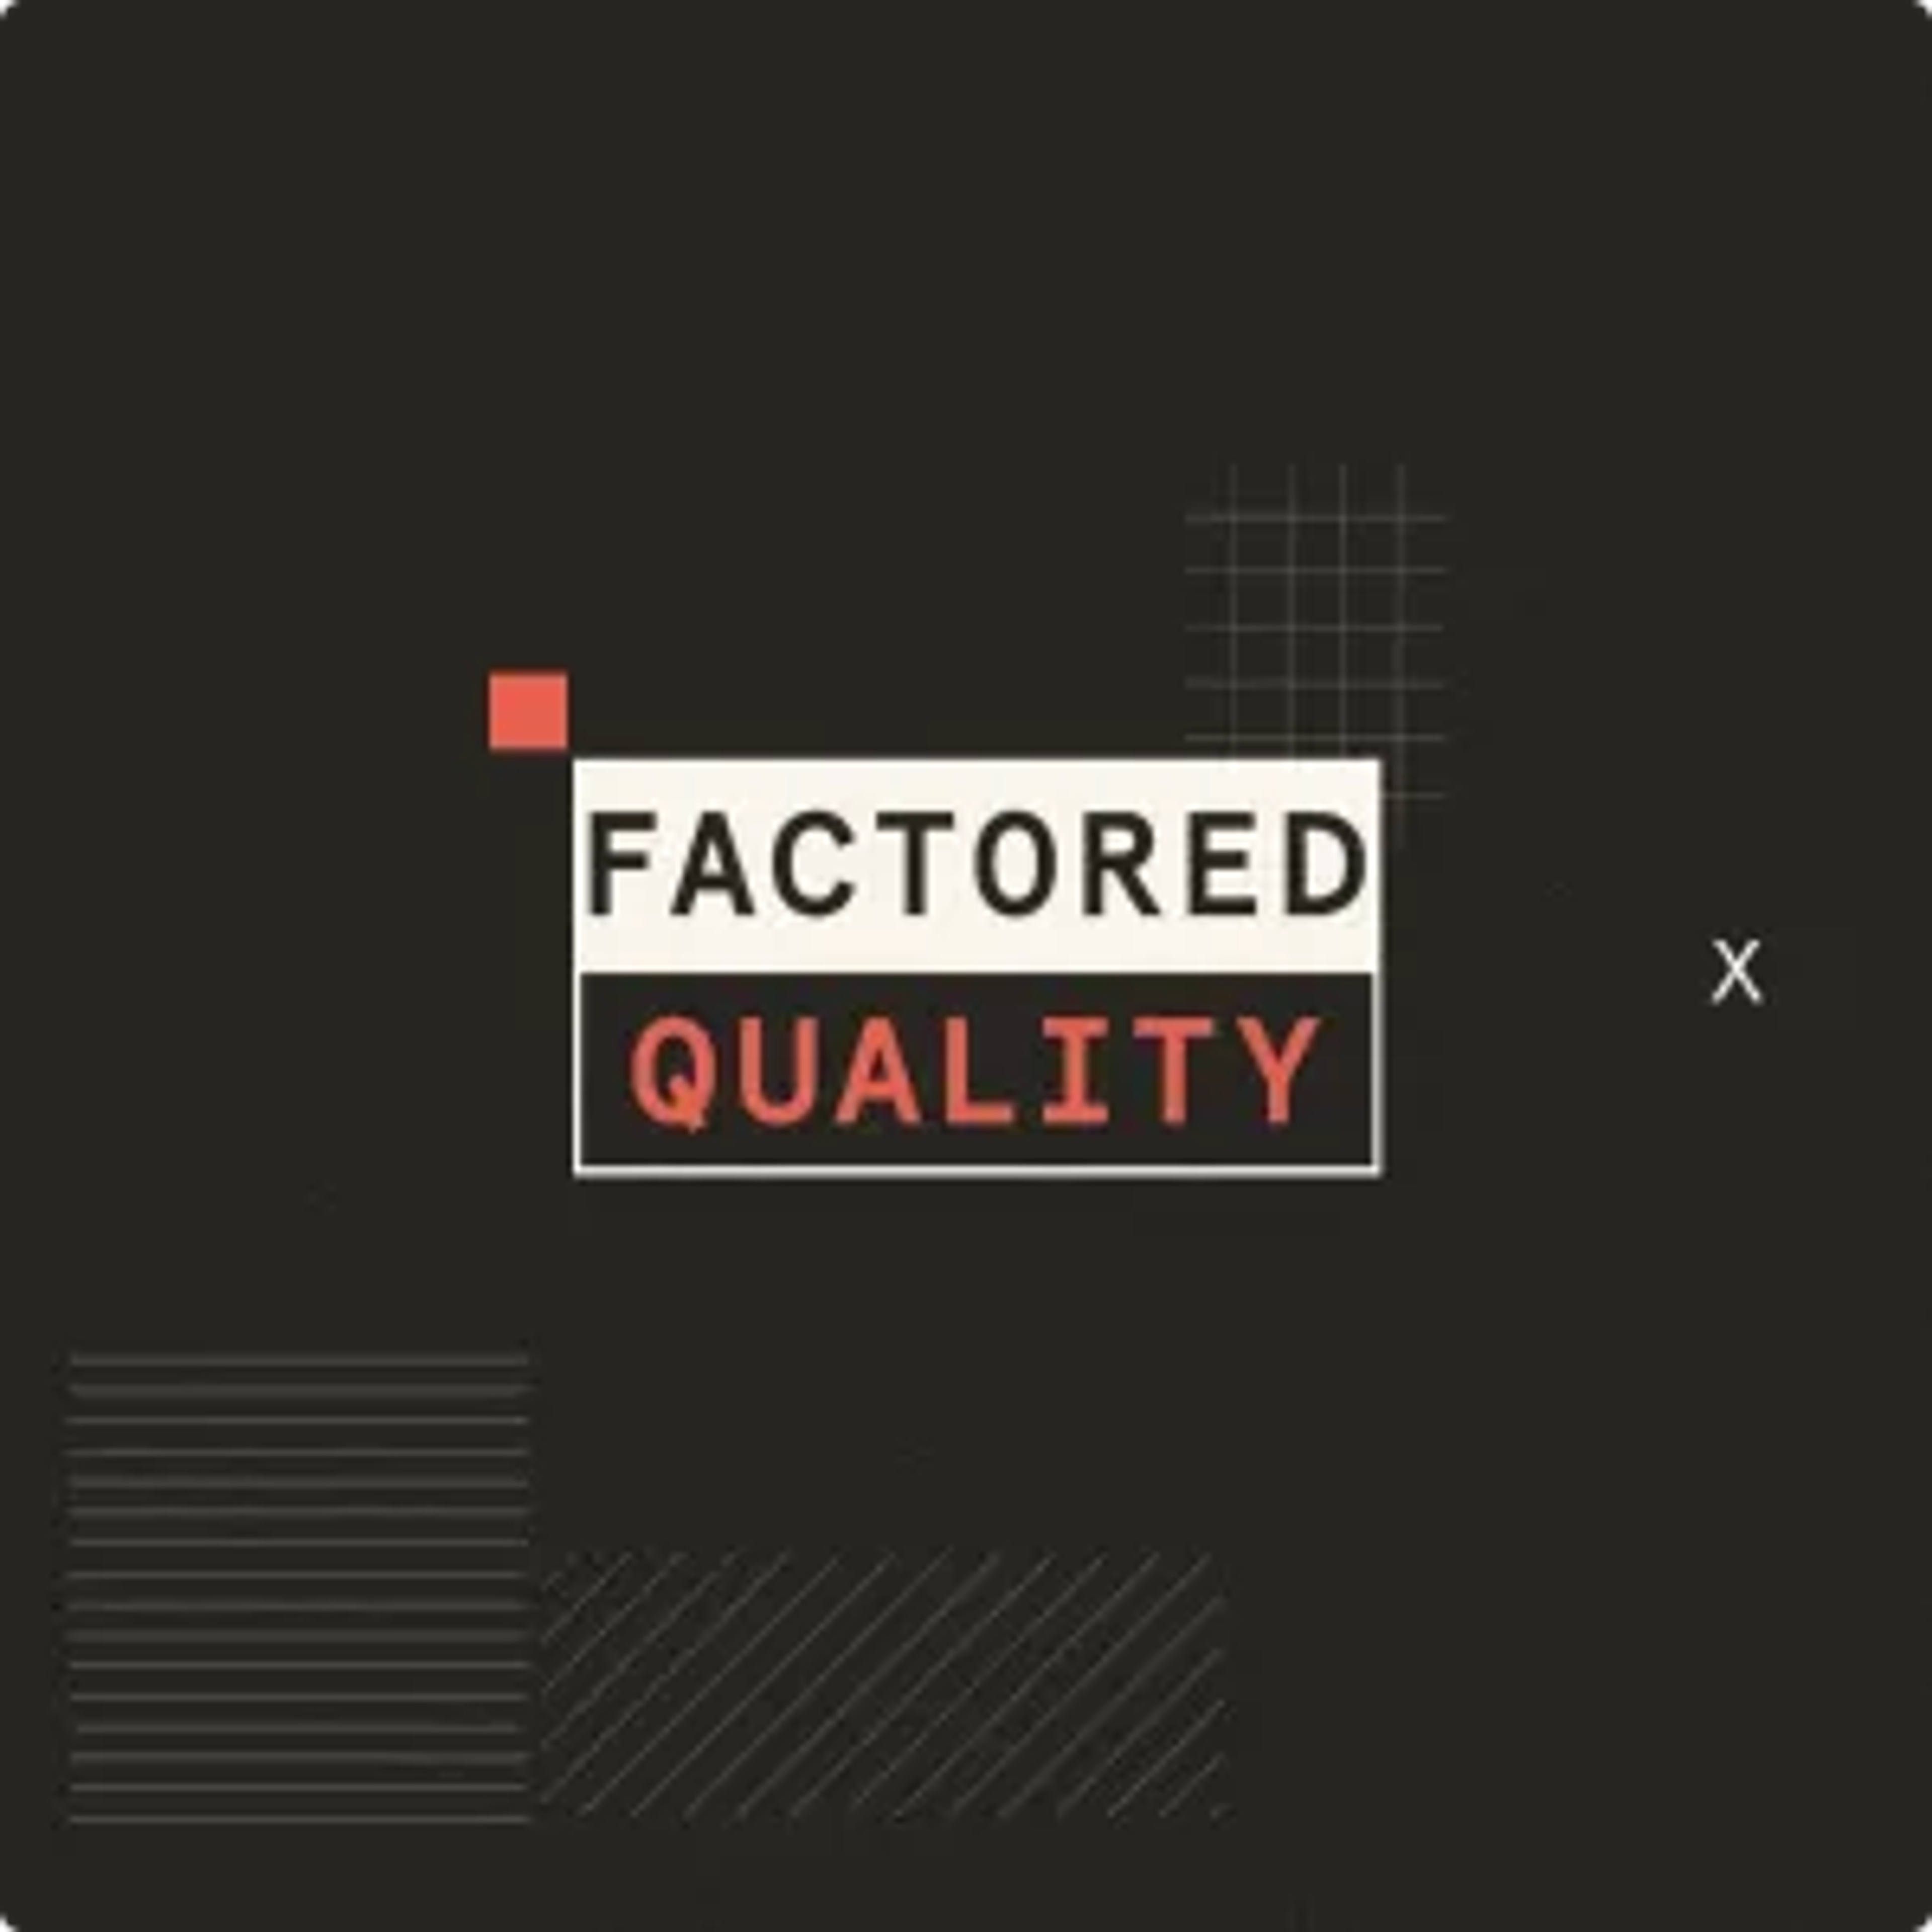 Logo für faktorisierte Qualität